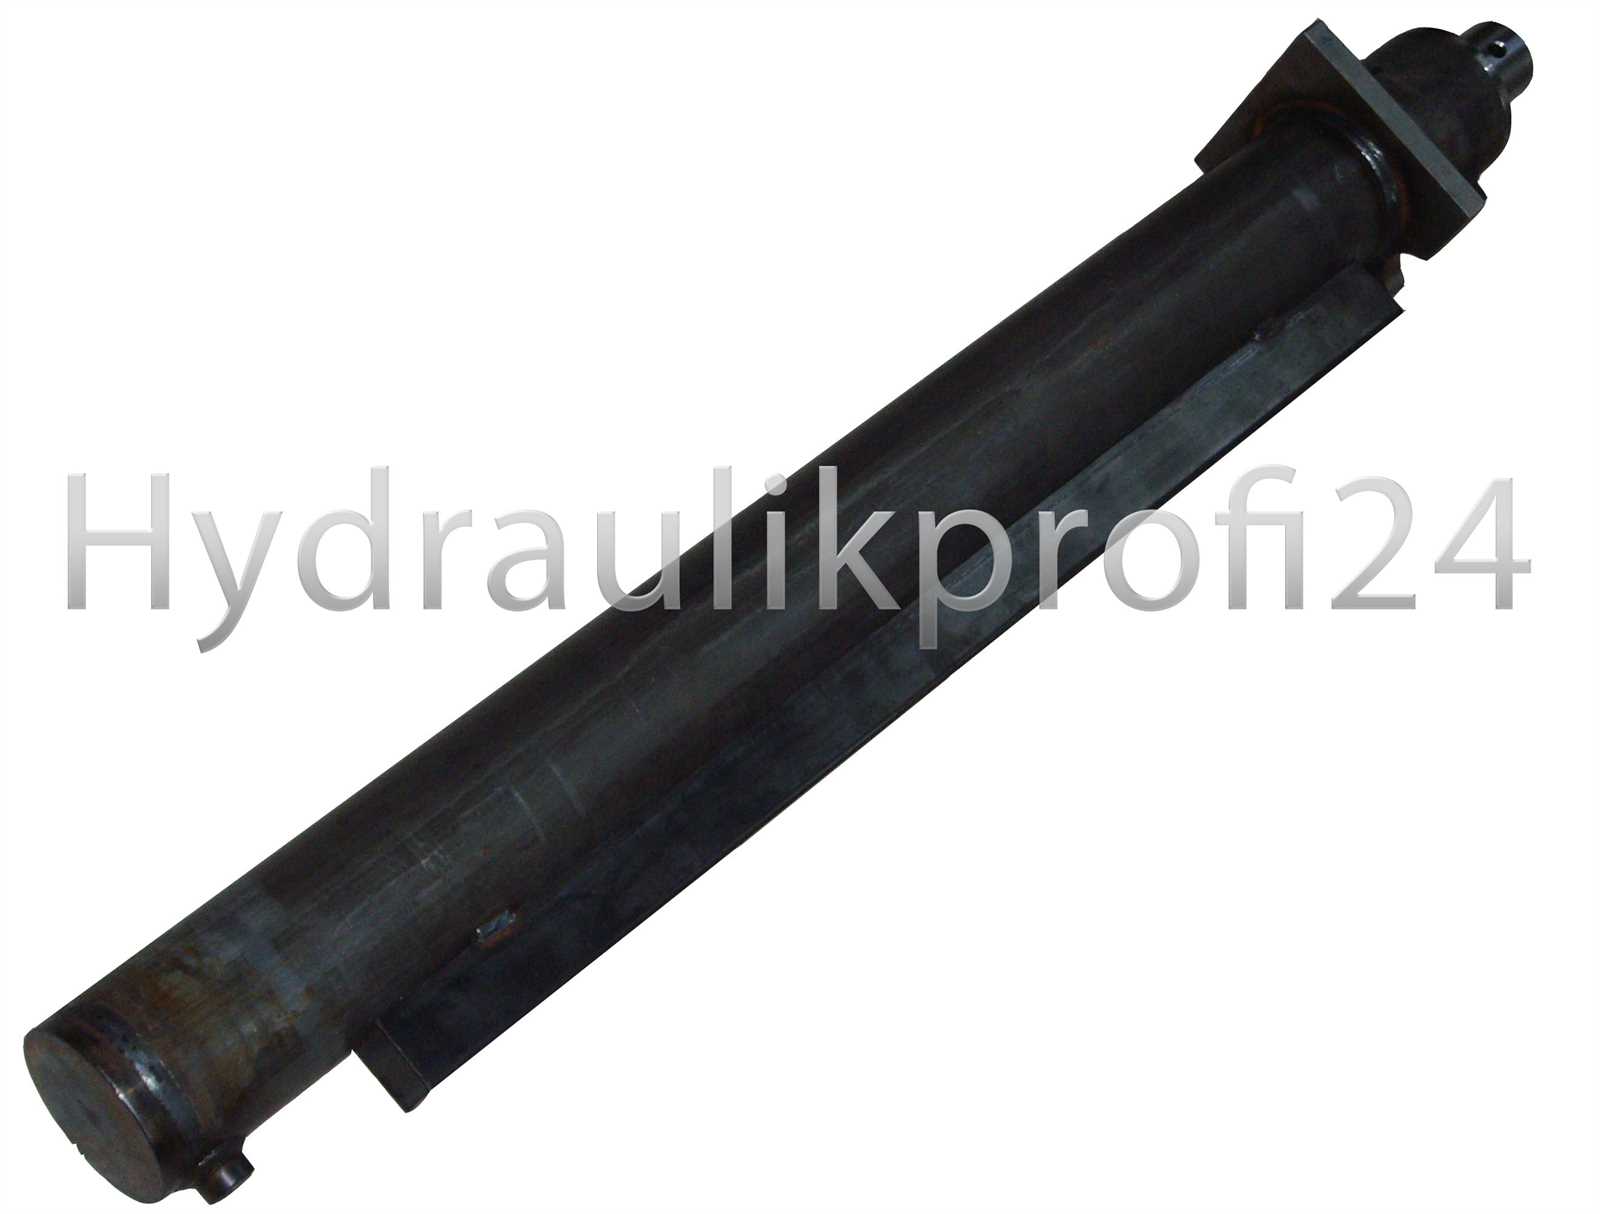 Hydraulikzylinder doppeltwirkend  80-120-1200 für Holzspalter mit Kopfflansch 200x200x25 mm